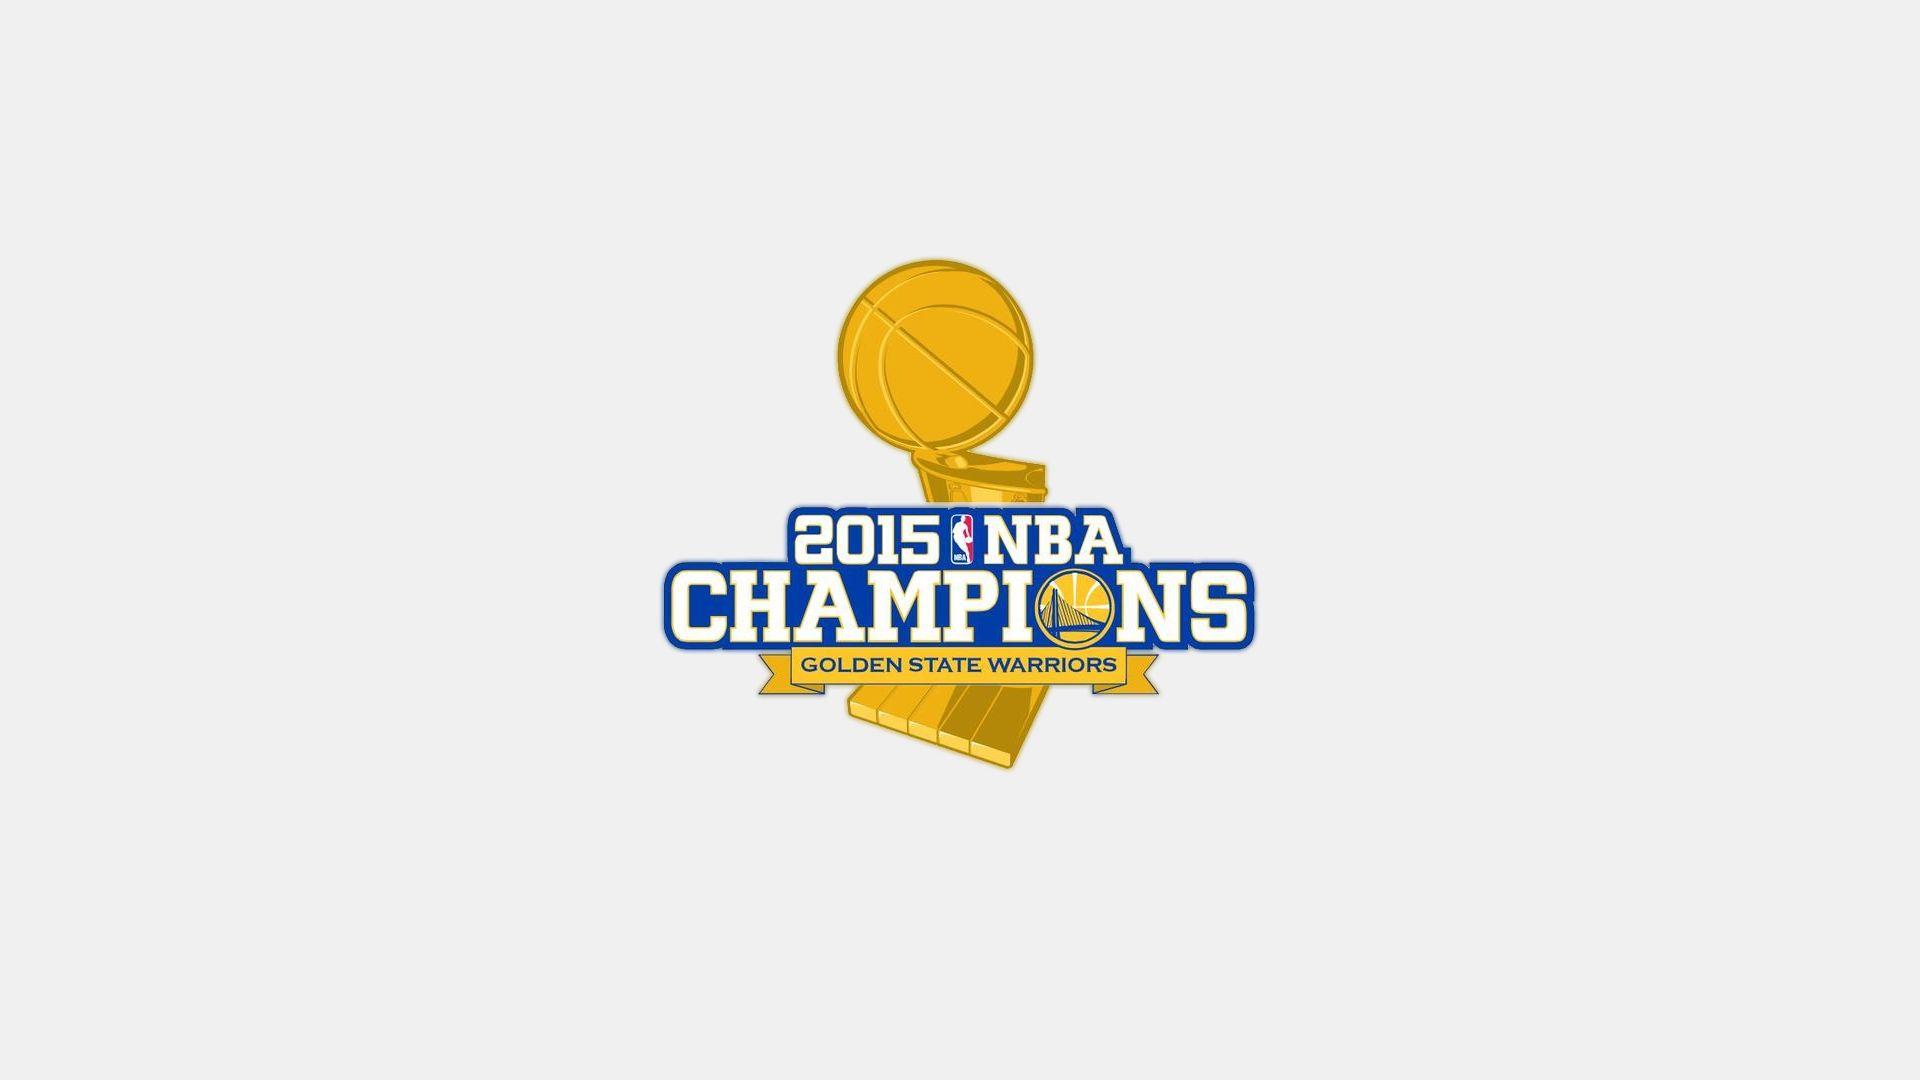 NBA Golden State Warriors 2015 Champions wallpaper HD 2016